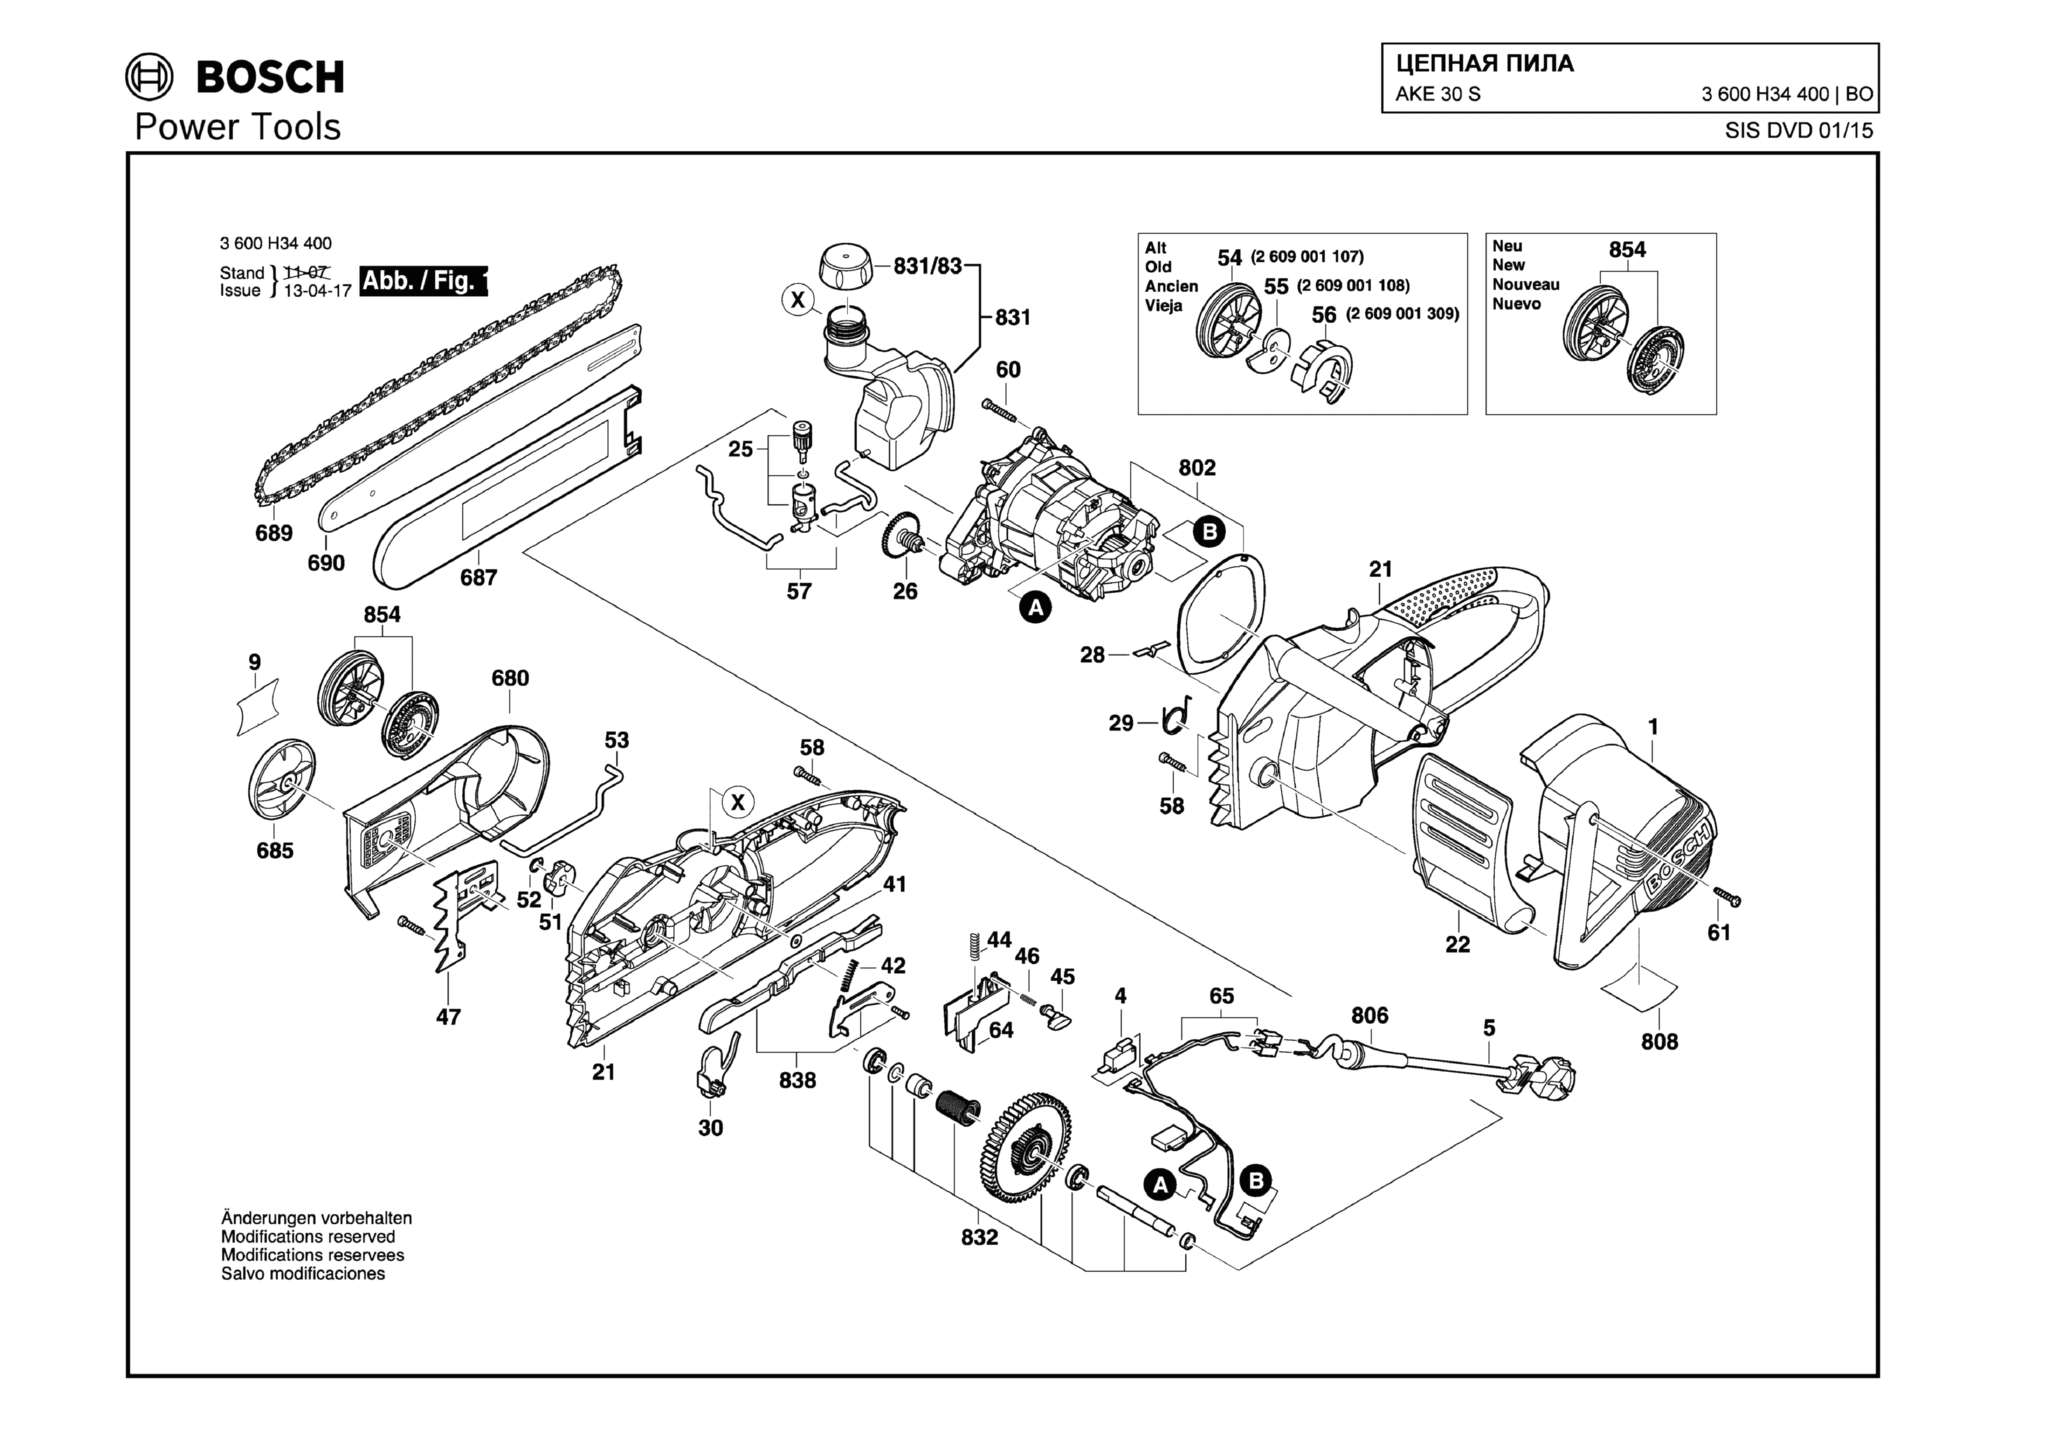 Запчасти, схема и деталировка Bosch AKE 30 S (ТИП 3600H34400)